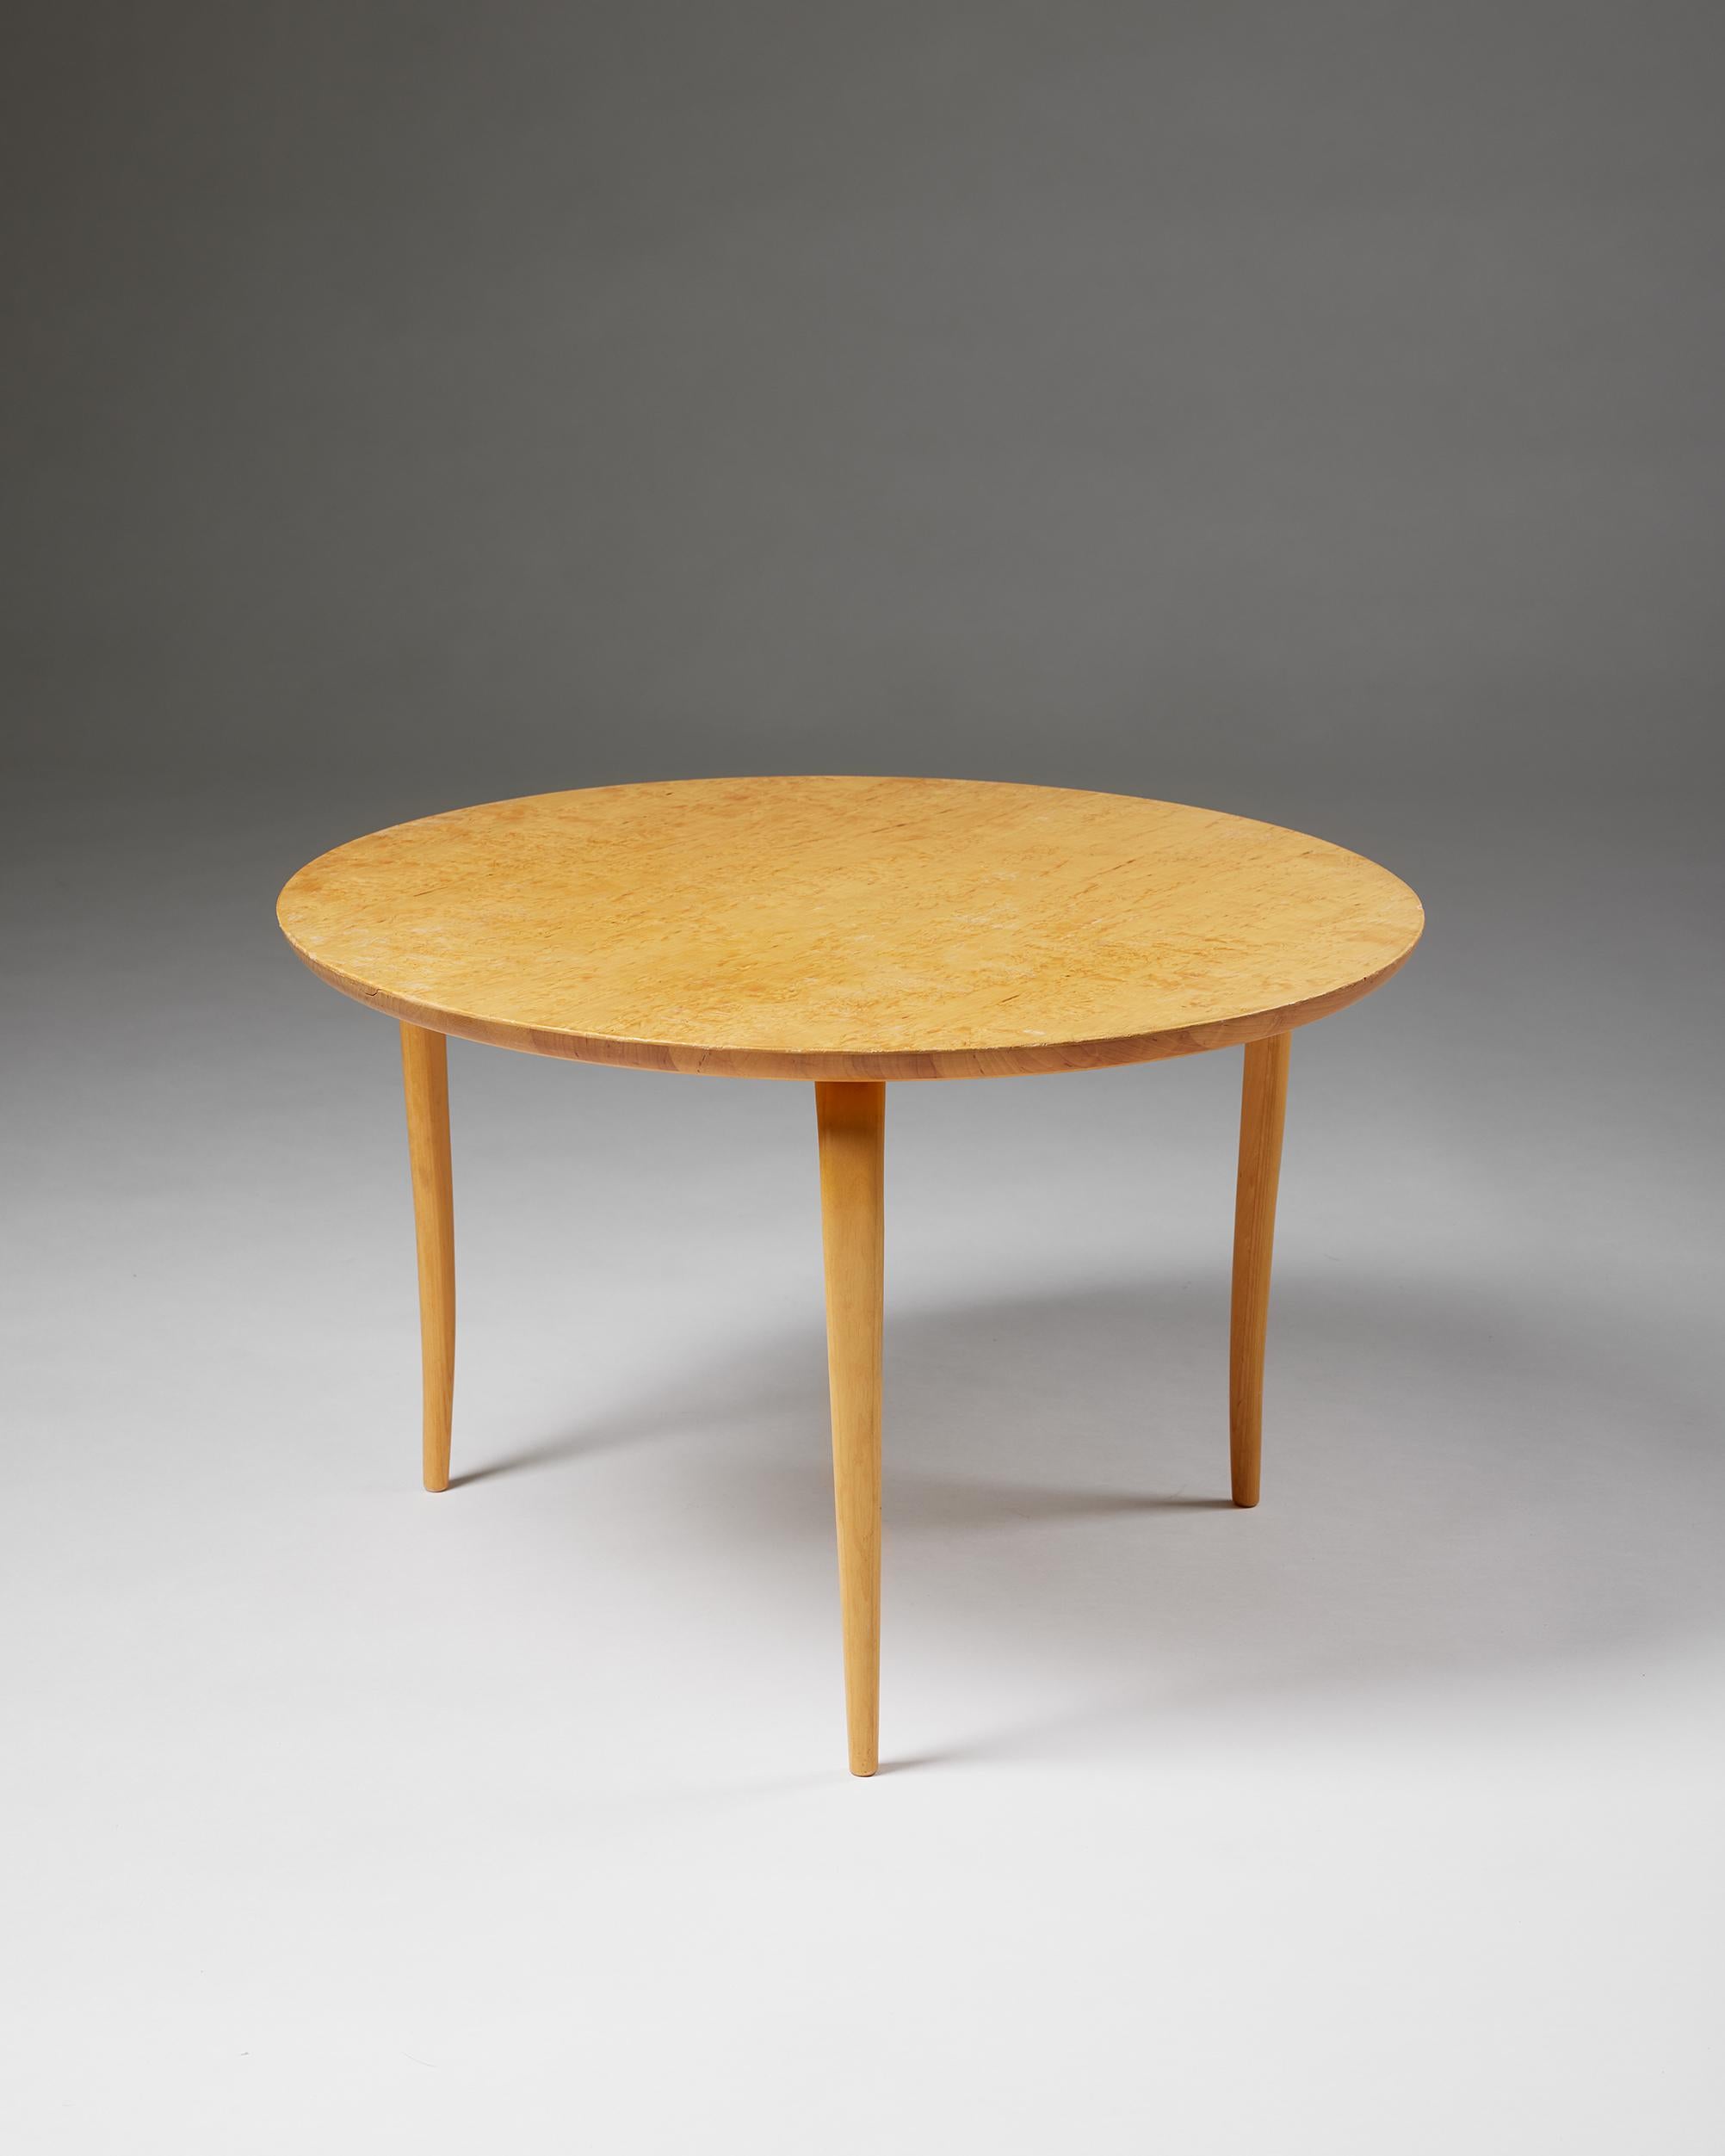 Table d'appoint 'Annika' conçue par Bruno Mathsson pour Karl Mathsson,
Suède, 1976.

Birch.

Estampillé.

H : 41,5 cm
Diamètre : 65 cm